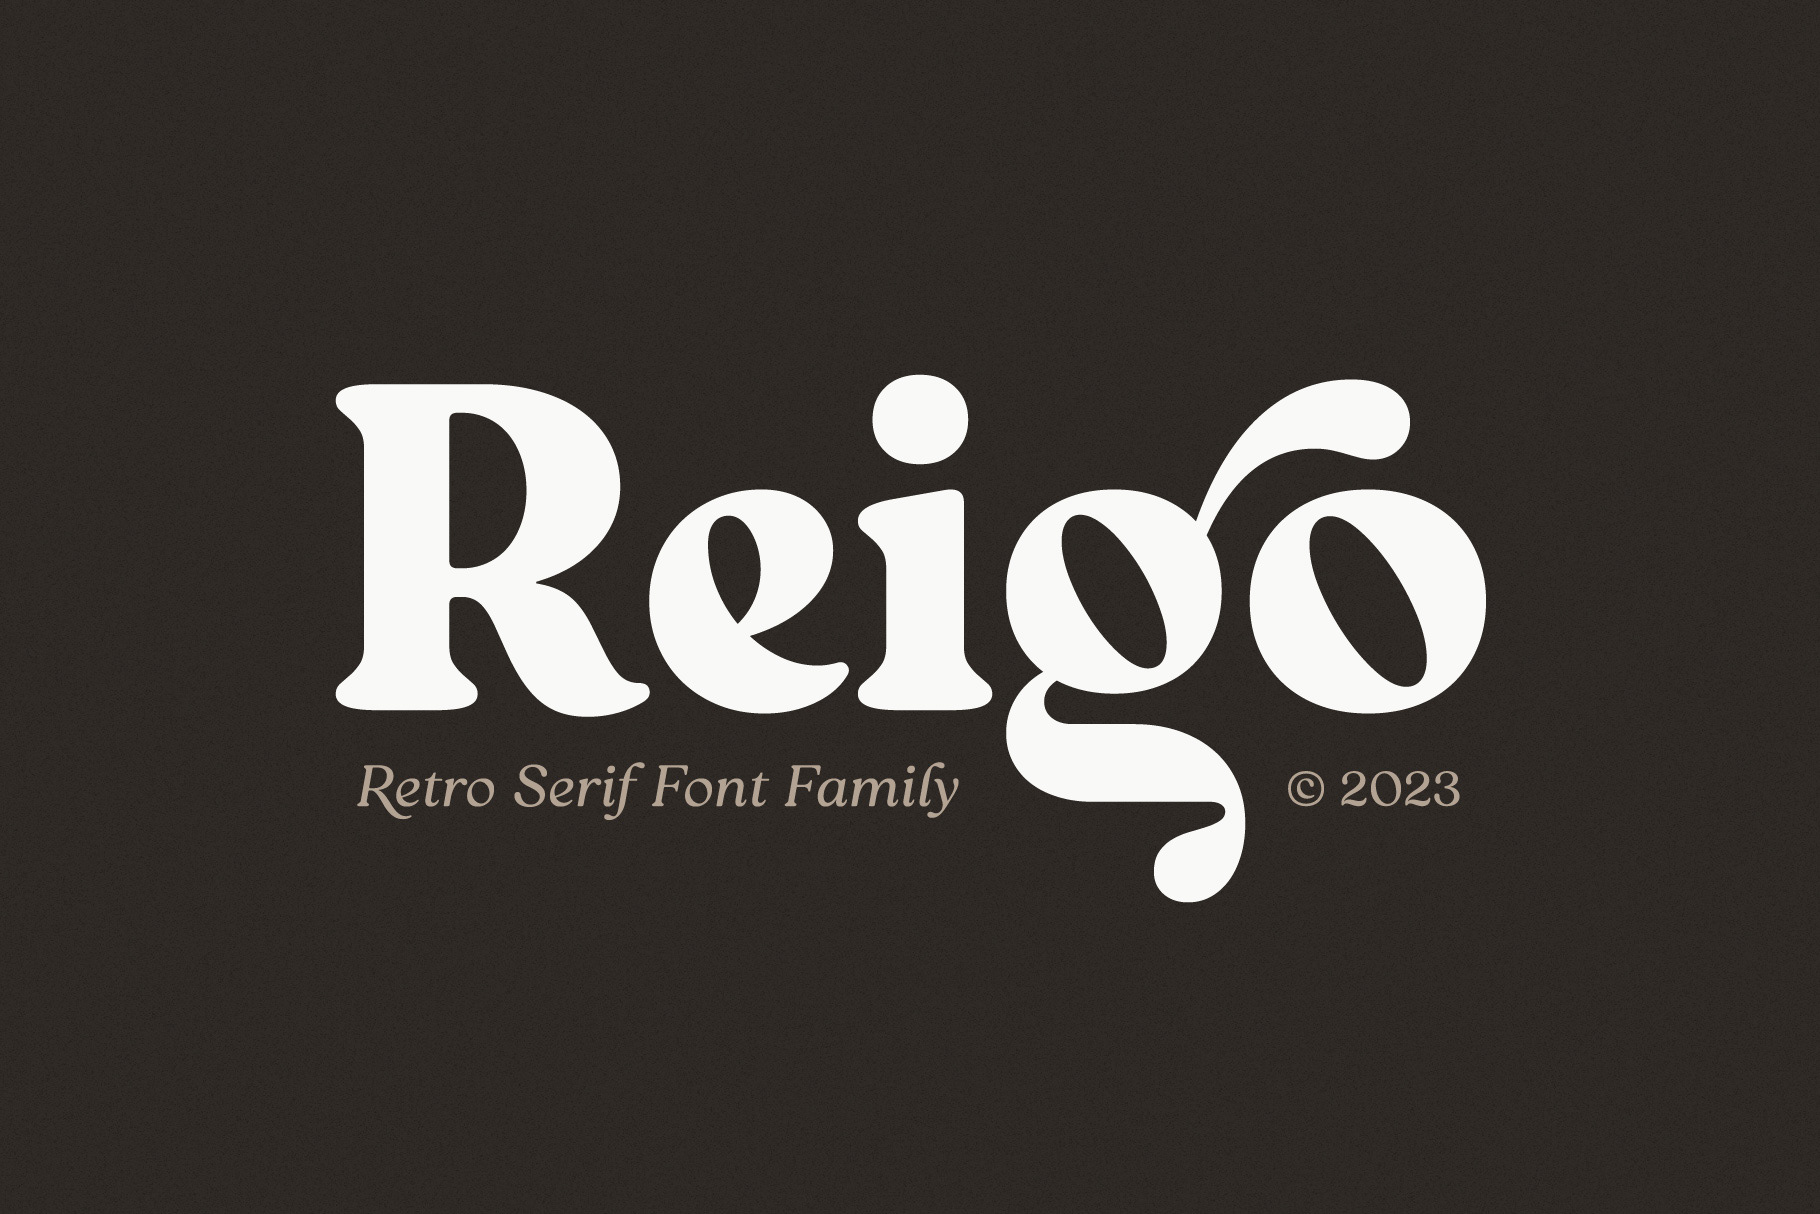 Reigo-Black rendition image